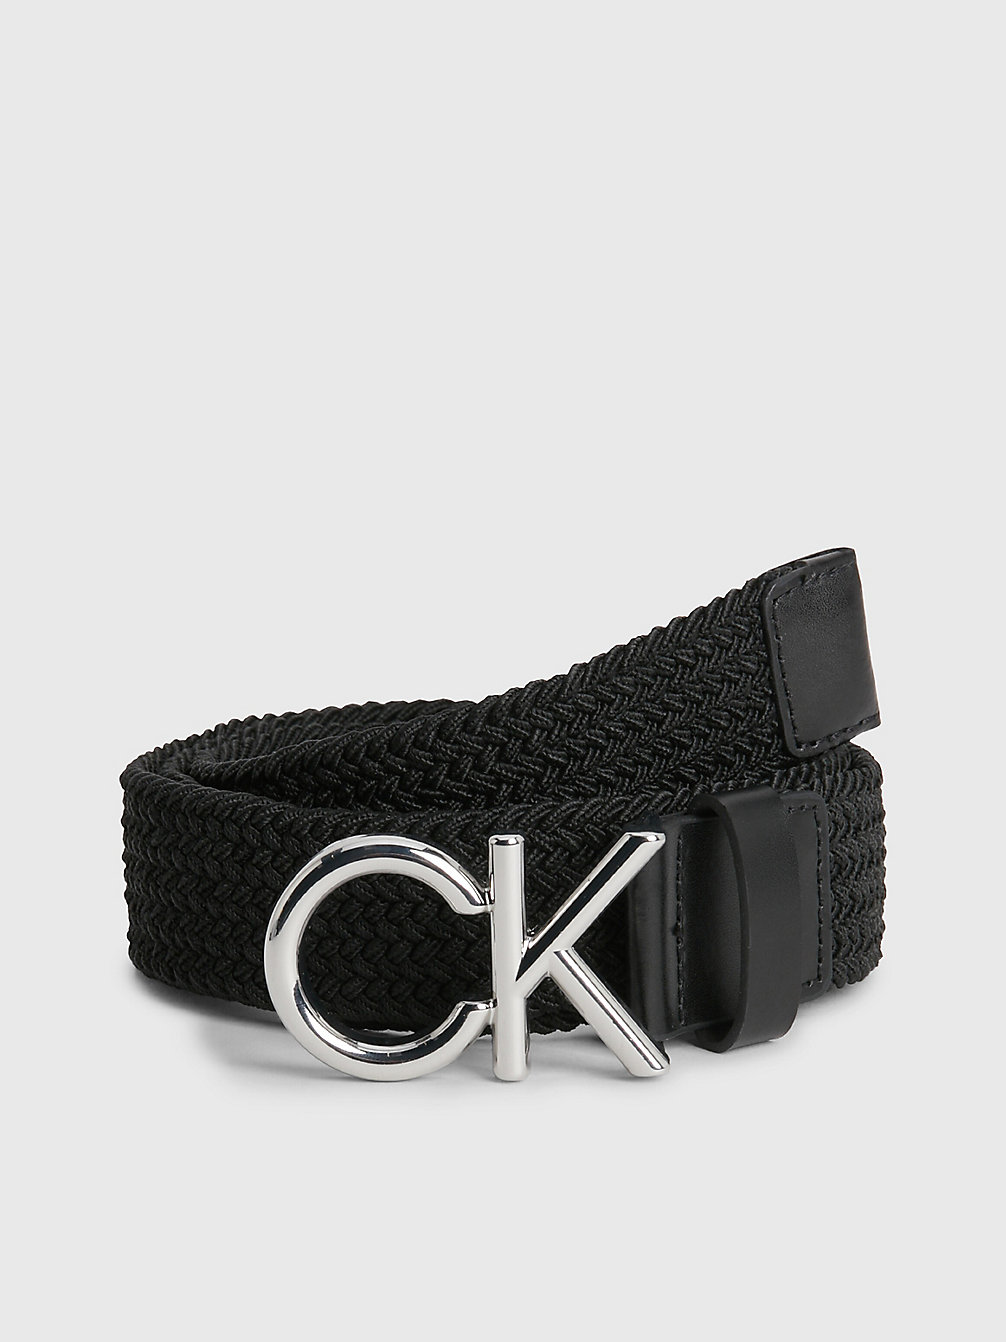 CK BLACK > Geflochtener Gürtel > undefined men - Calvin Klein